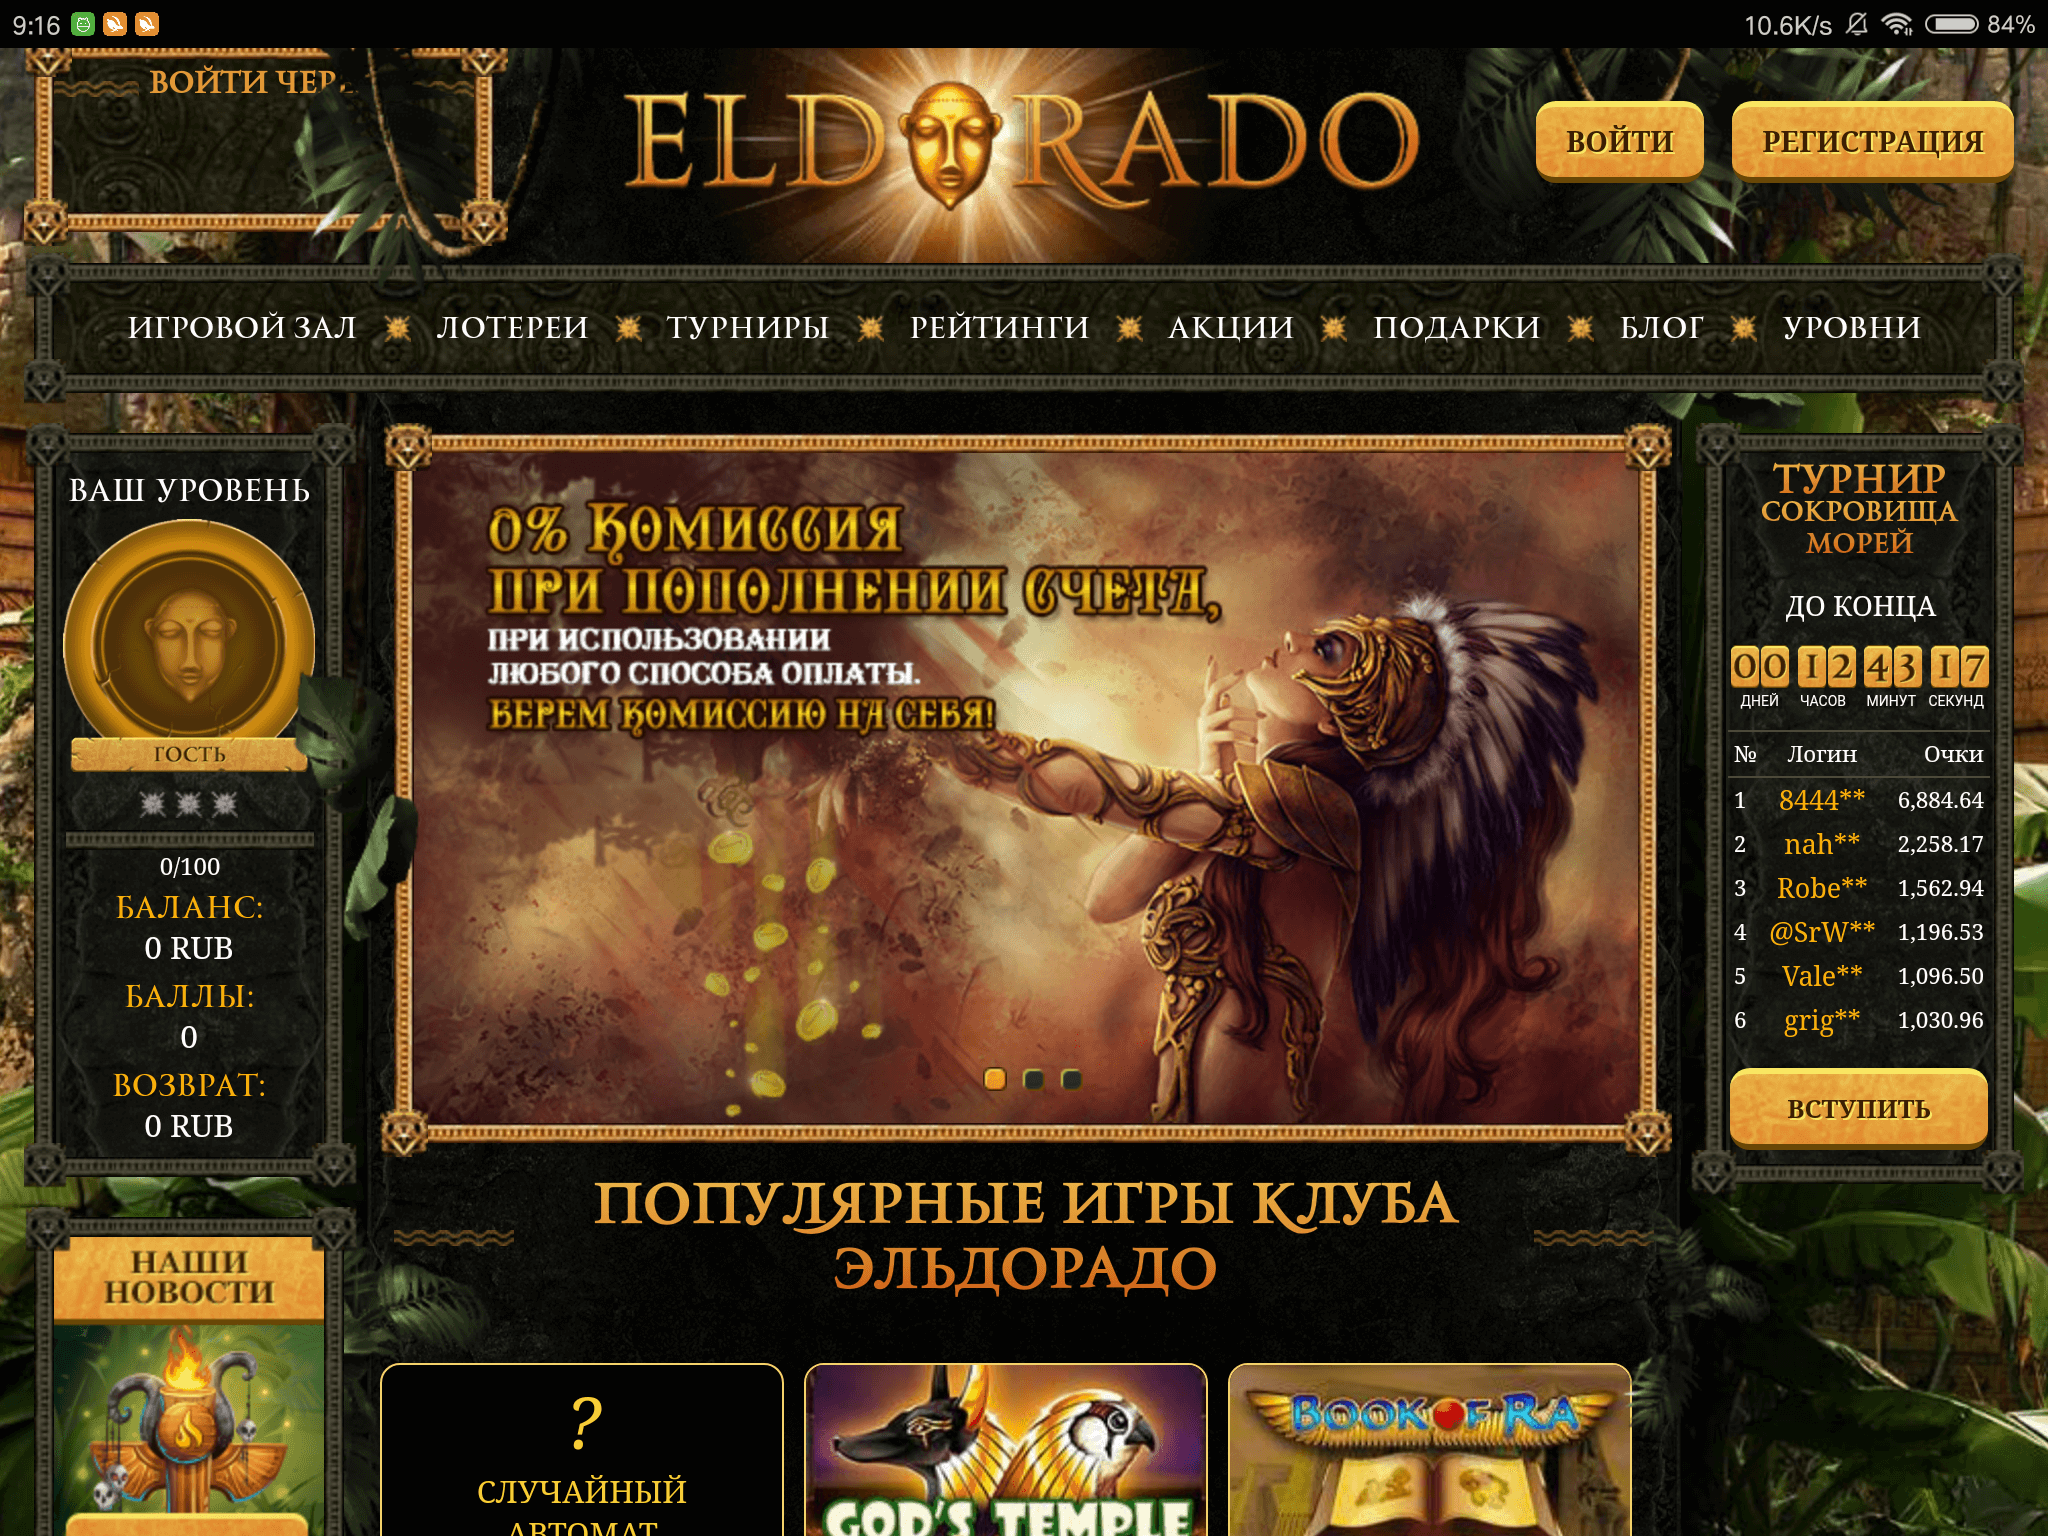 Обзор онлайн казино eldorado город харьков казино на пушкинской